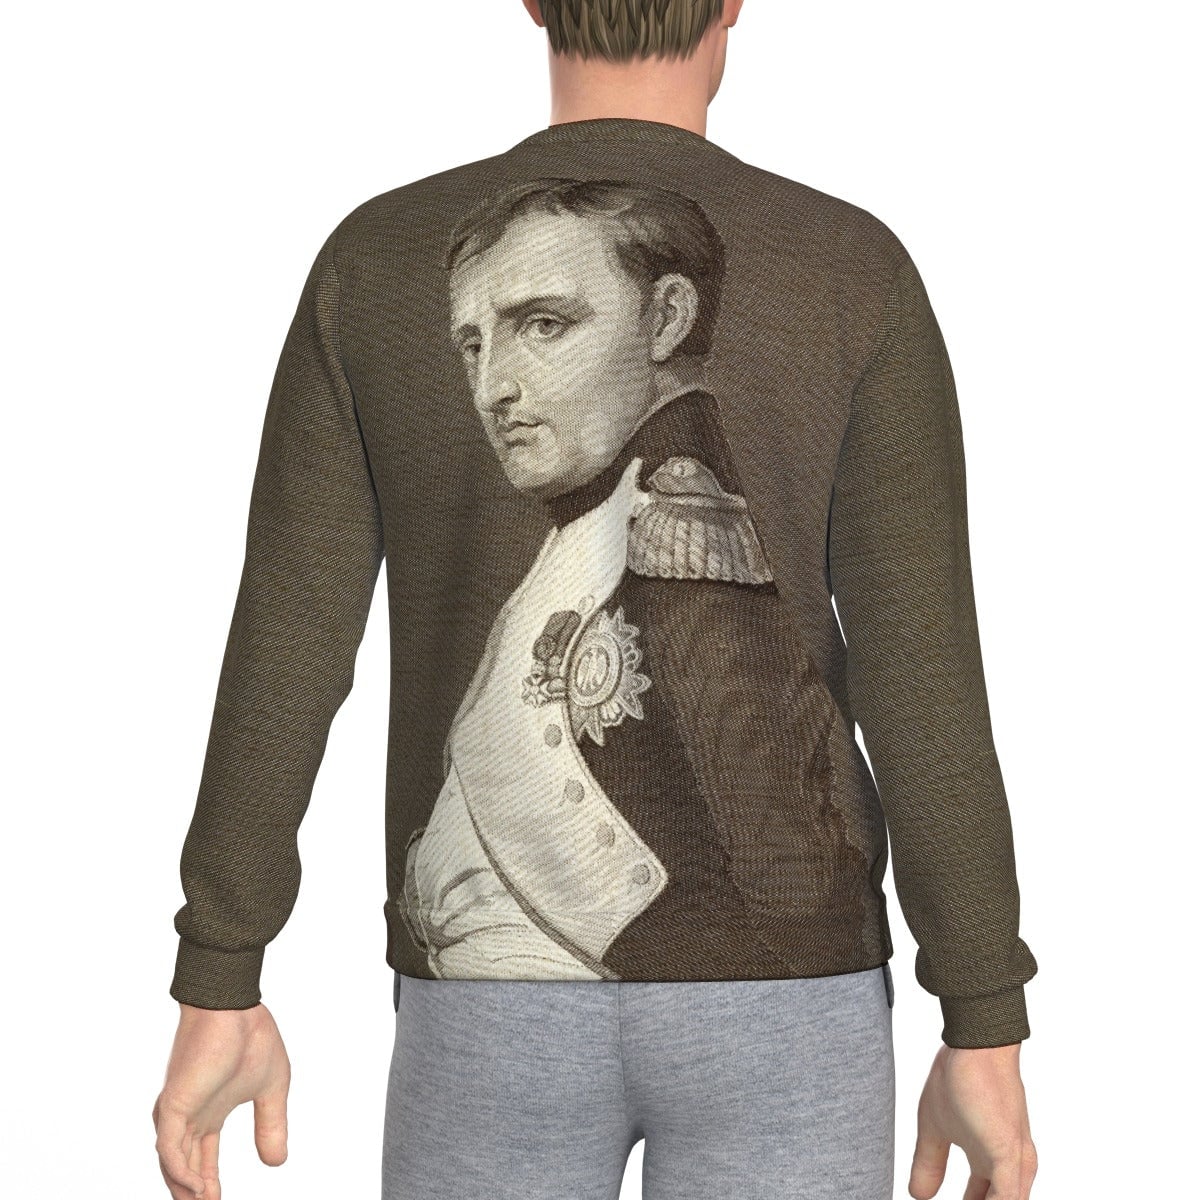 Emperor Napoleon Bonaparte Historical Portrait Sweatshirt